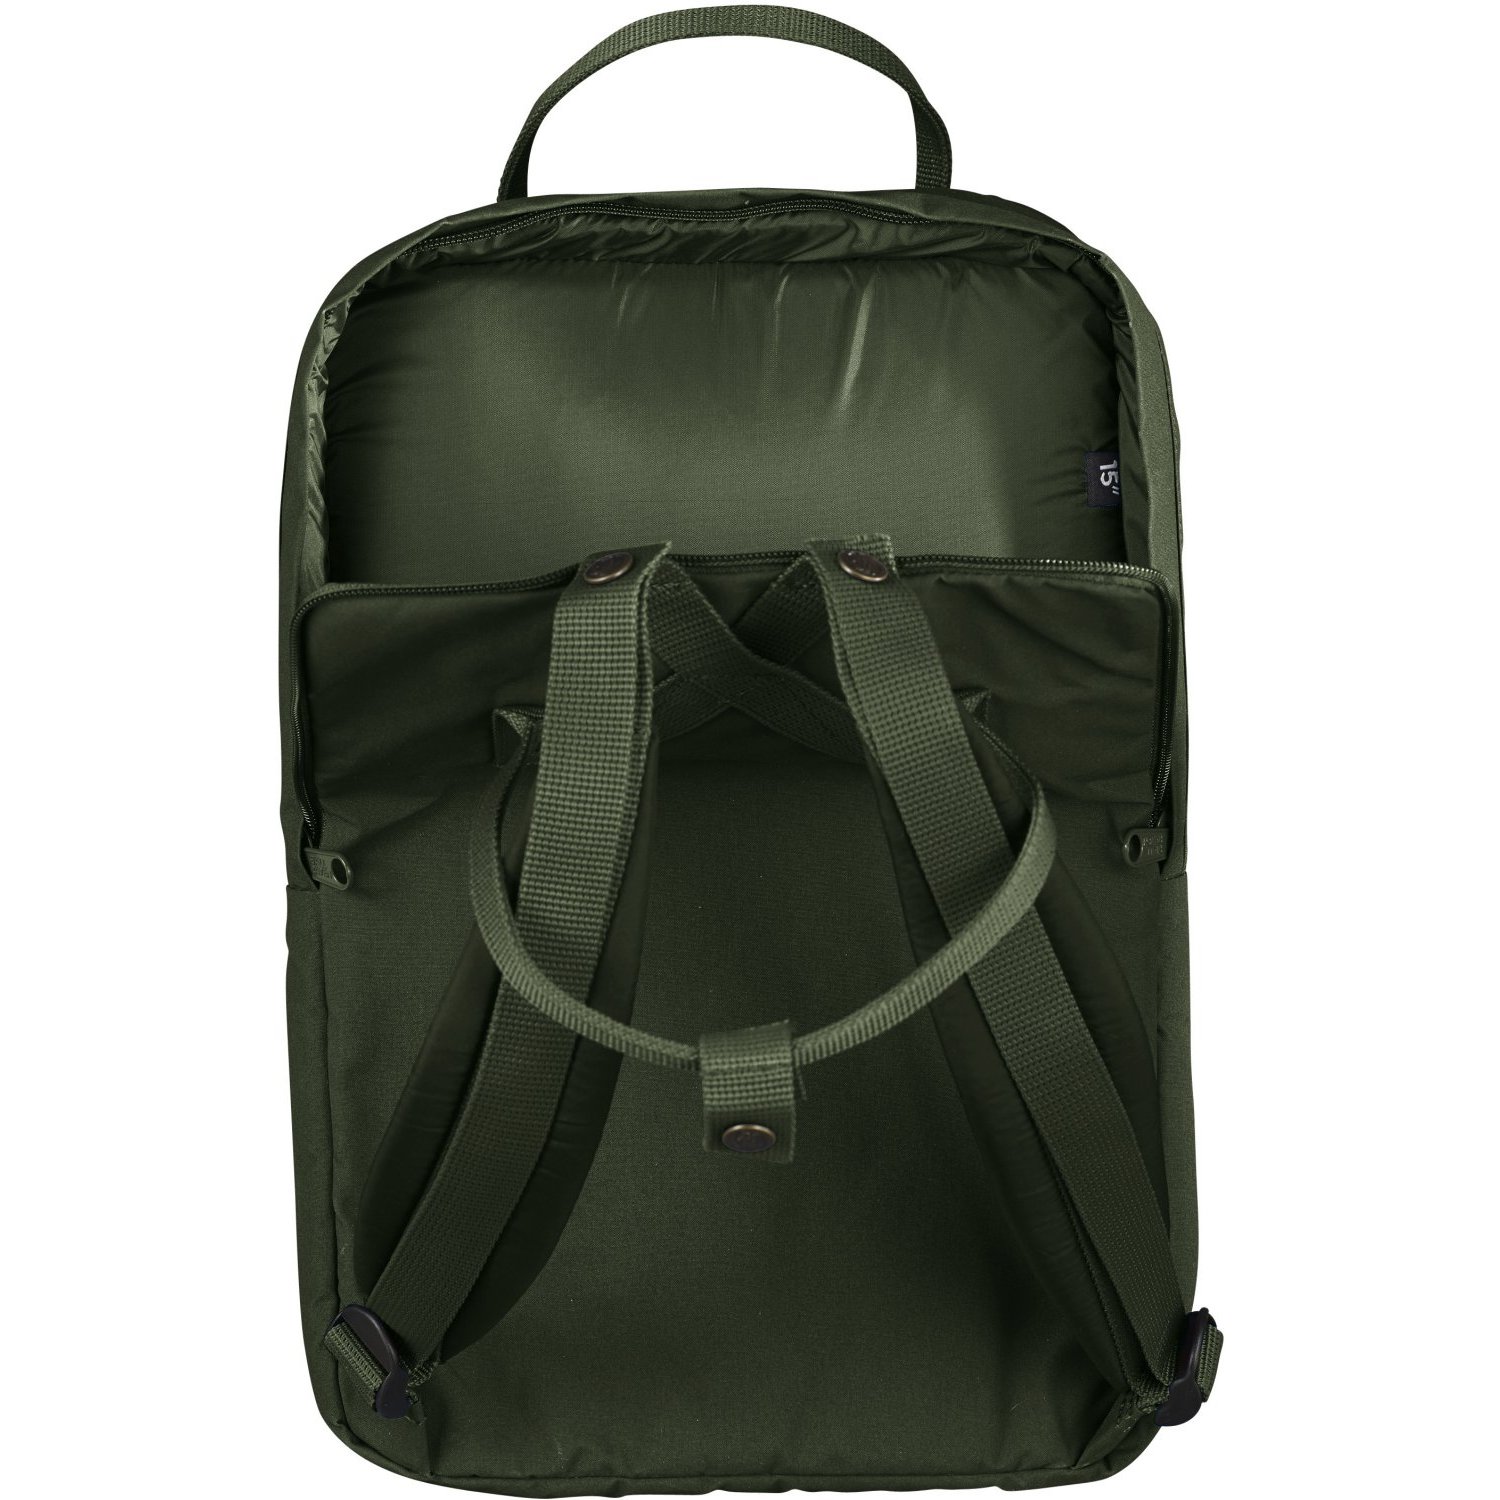 Kanken Laptop Backpack: The Best Laptop Bag Reviewed | SwedishBackpack.com